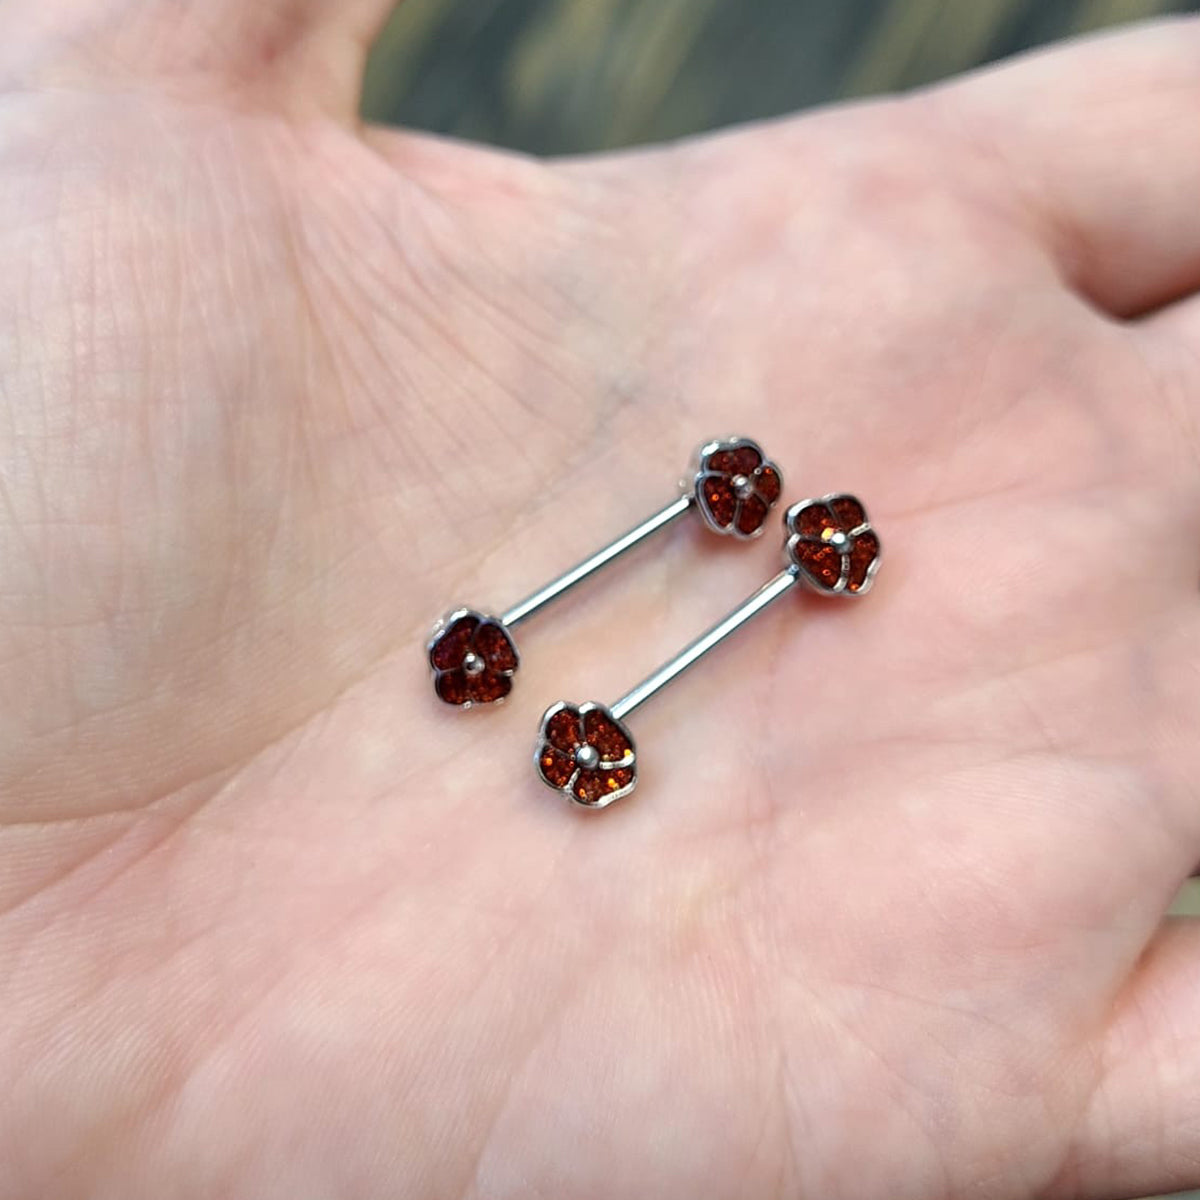 Pair of Nipple Barbells Rings Red Glitter Flower Design Surgical Steel 14 Gauge